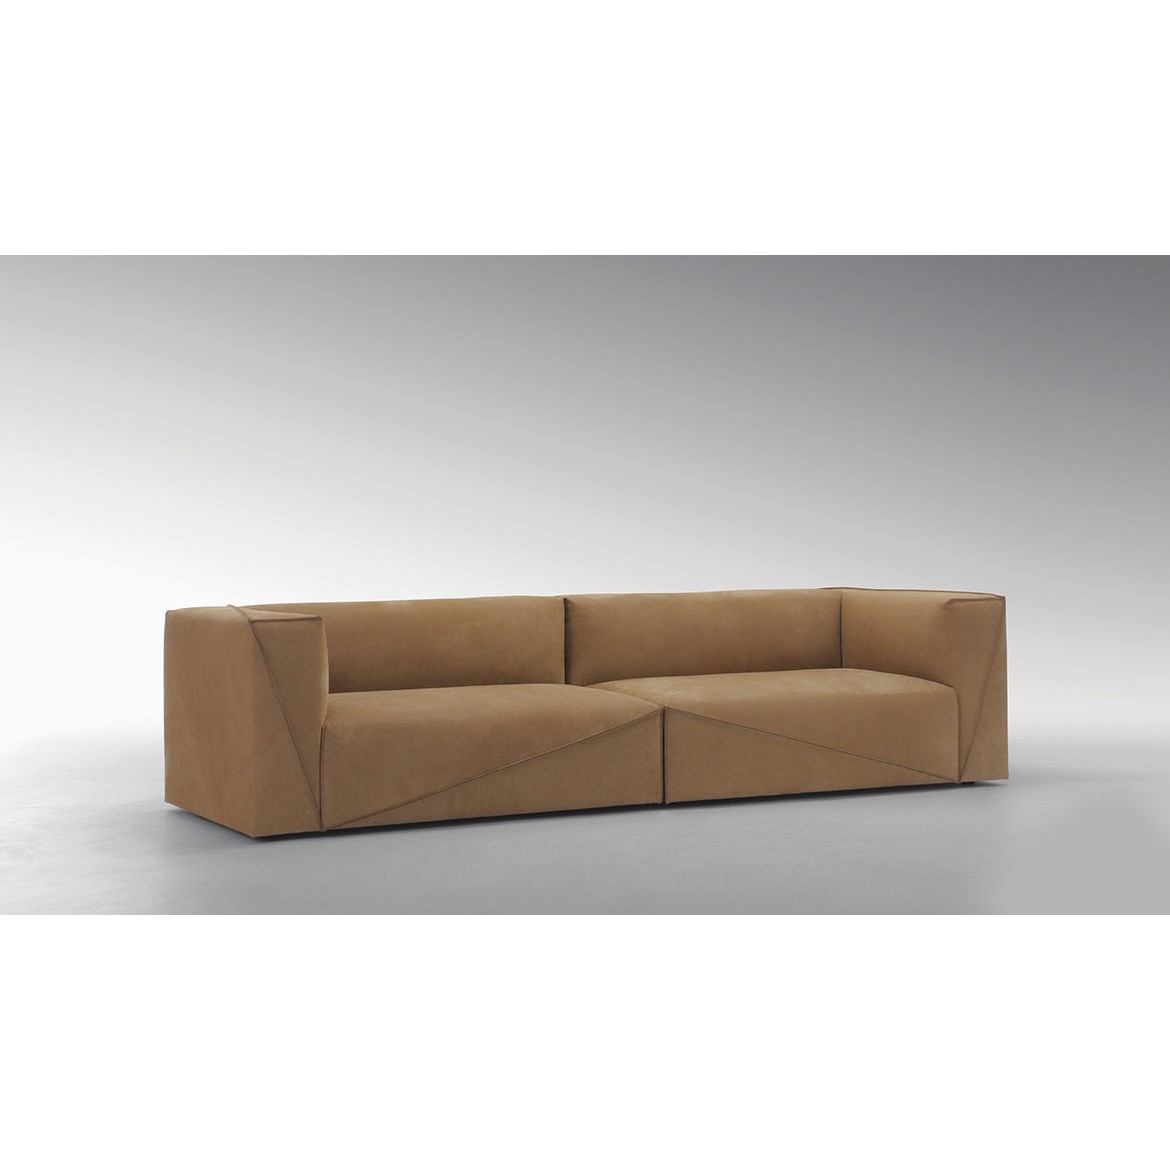 Диван, стиль хай-тек, дизайн  Fendi Casa, модель Diagonal Sofa